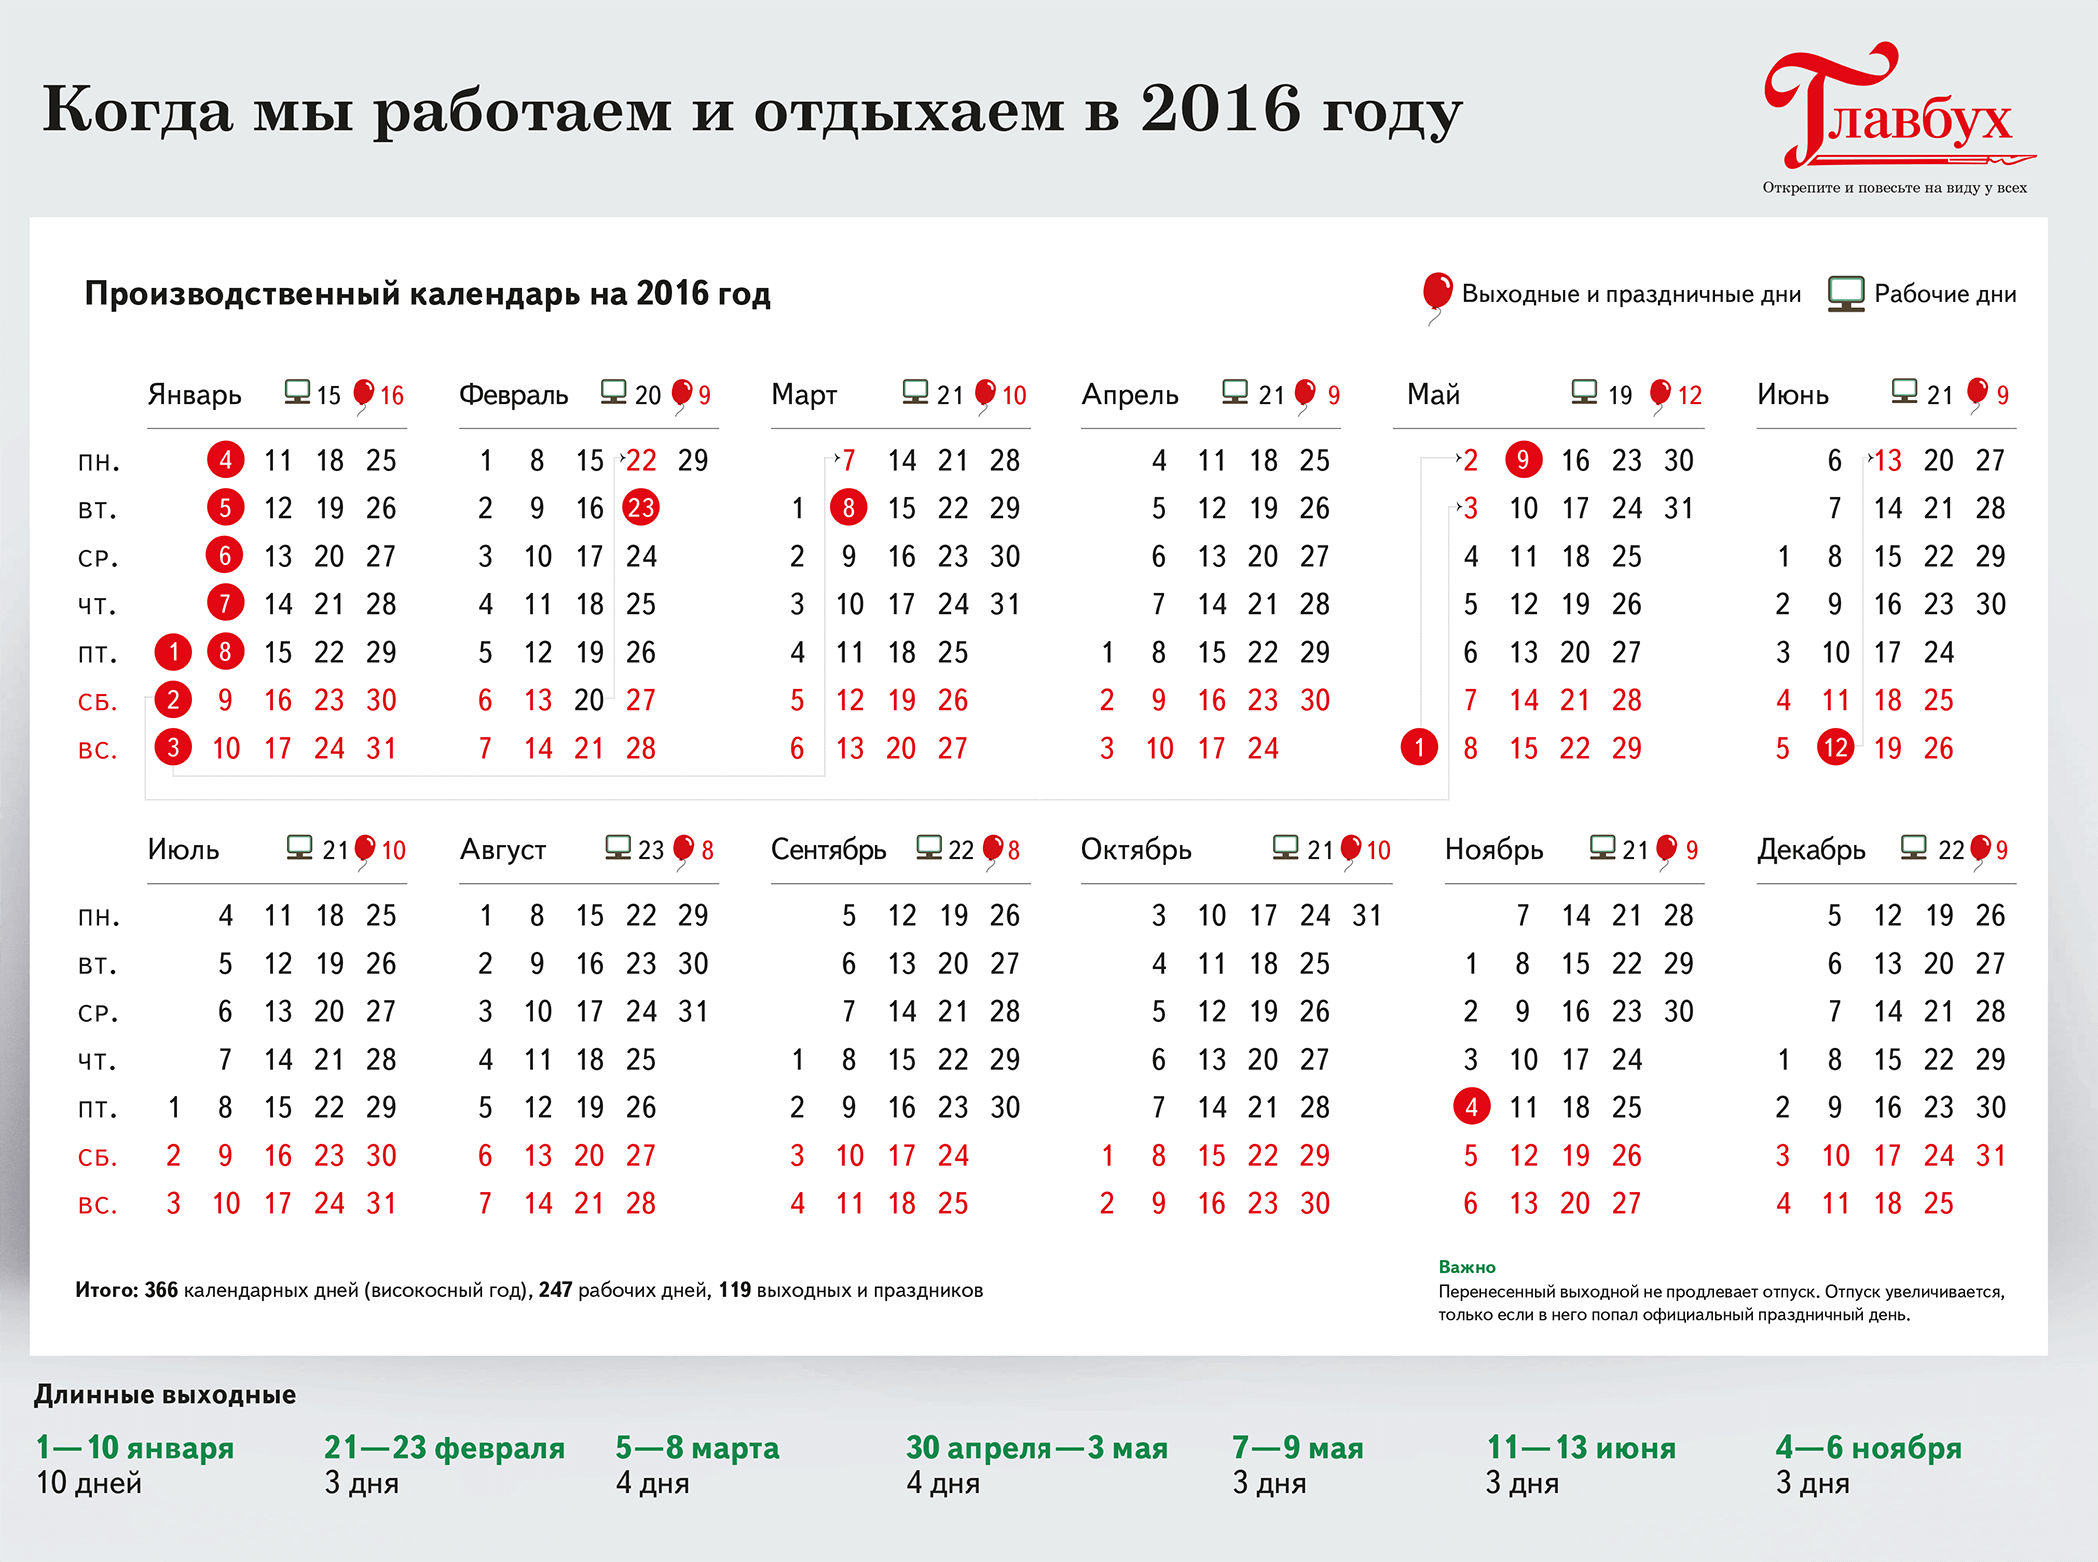 Праздничные рабочие дни. Календарь праздников. Календарь праздников 2016. Выходные и праздничные дни в 2016 году. Производственный календарь 2016